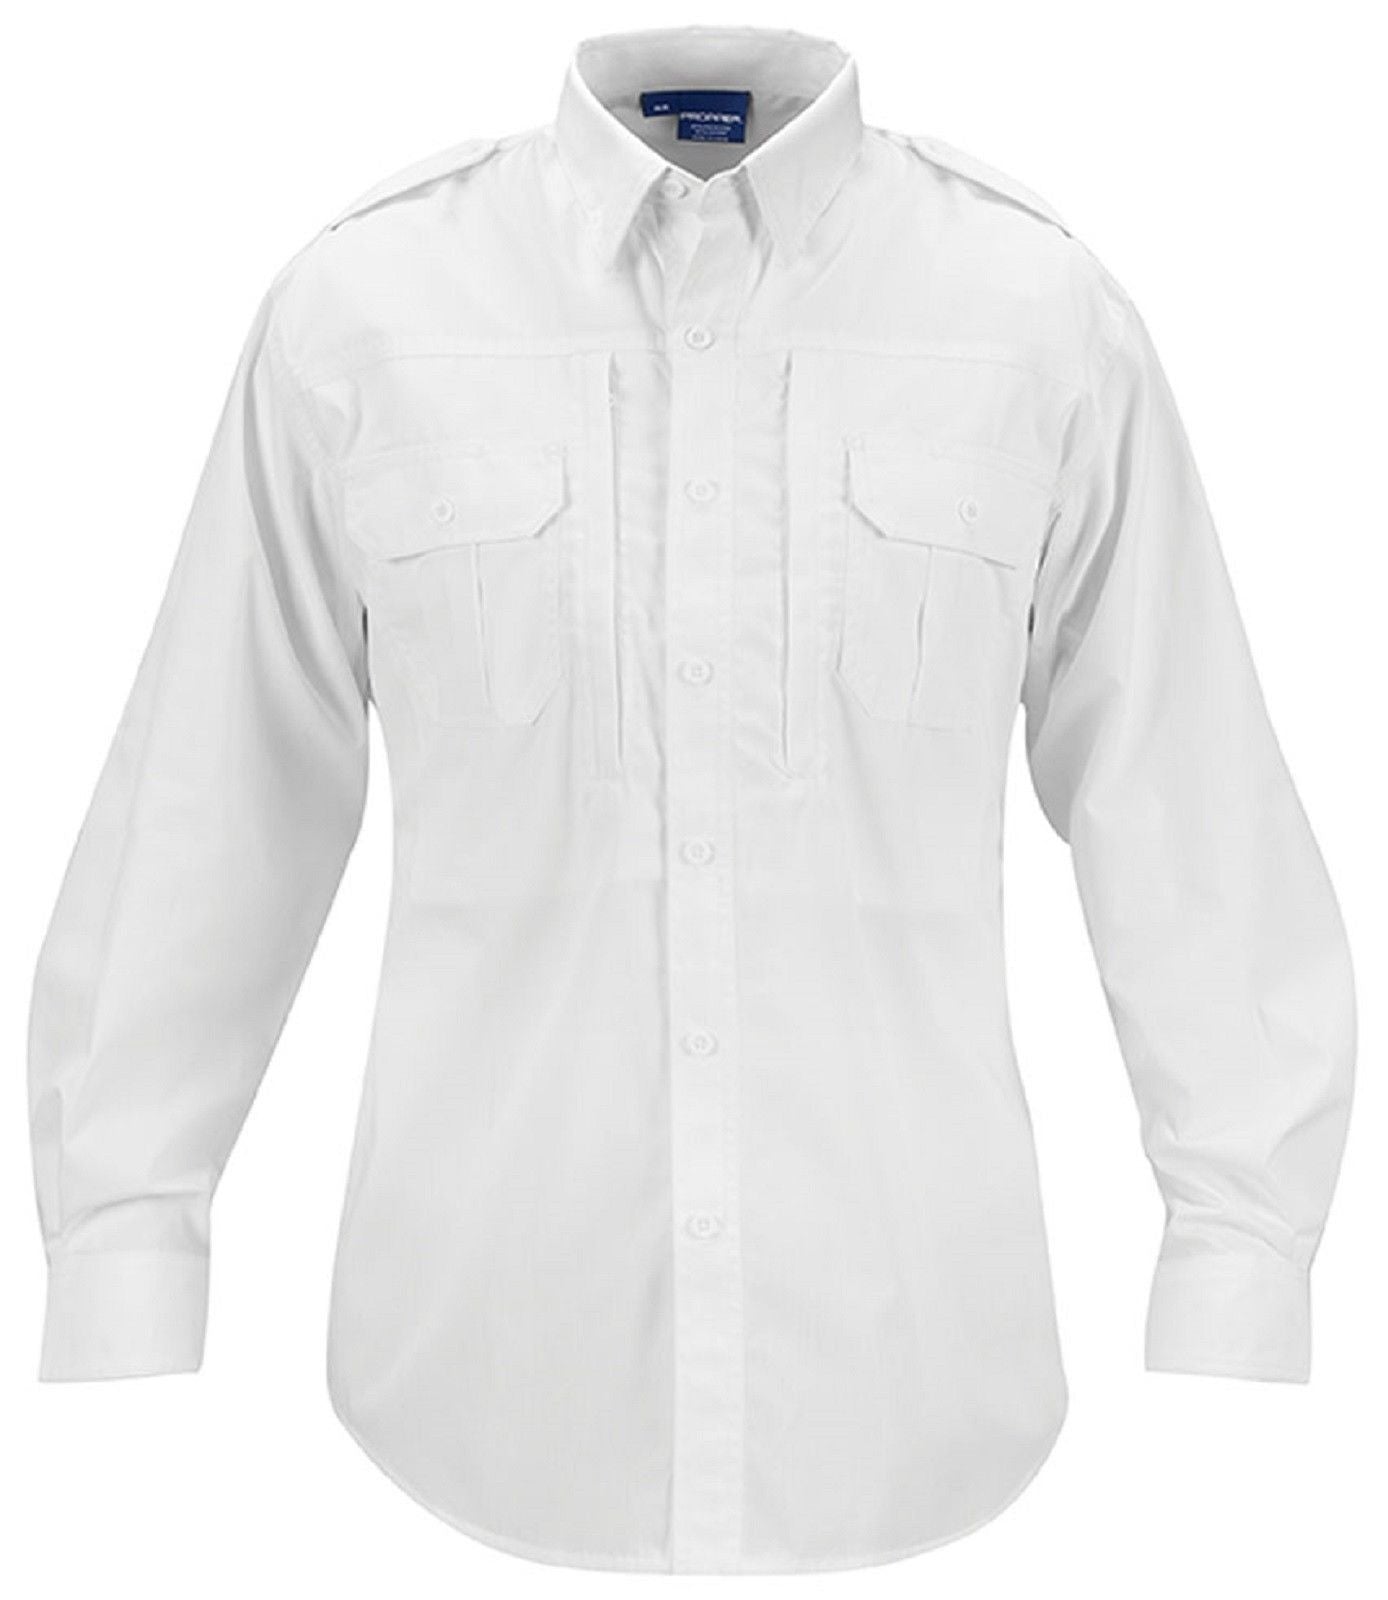 Propper Lightweight Tactical Shirt - Men's Long Sleeve Button Up